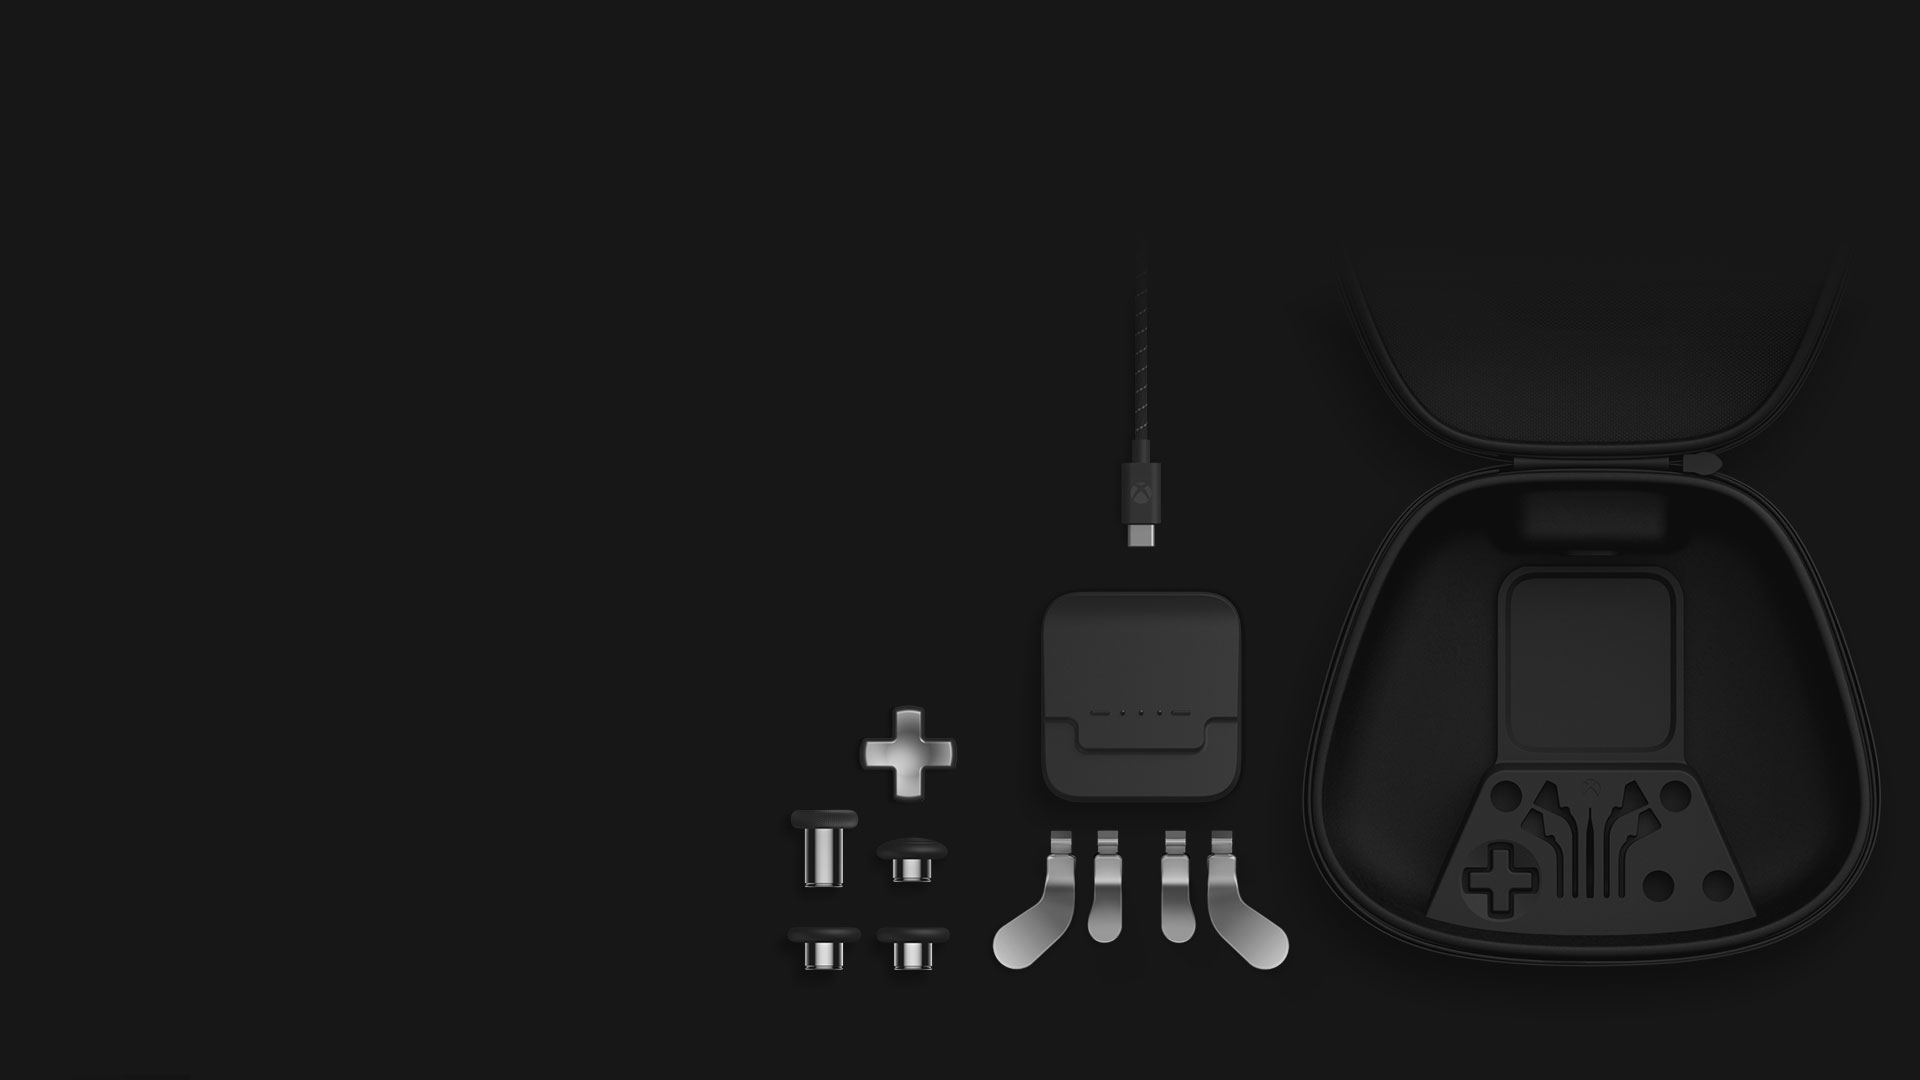 Vista isométrica del contenido del Pack completo de componentes: palancas de mando, cruceta, palancas, soporte de carga, cable USB-C y estuche.